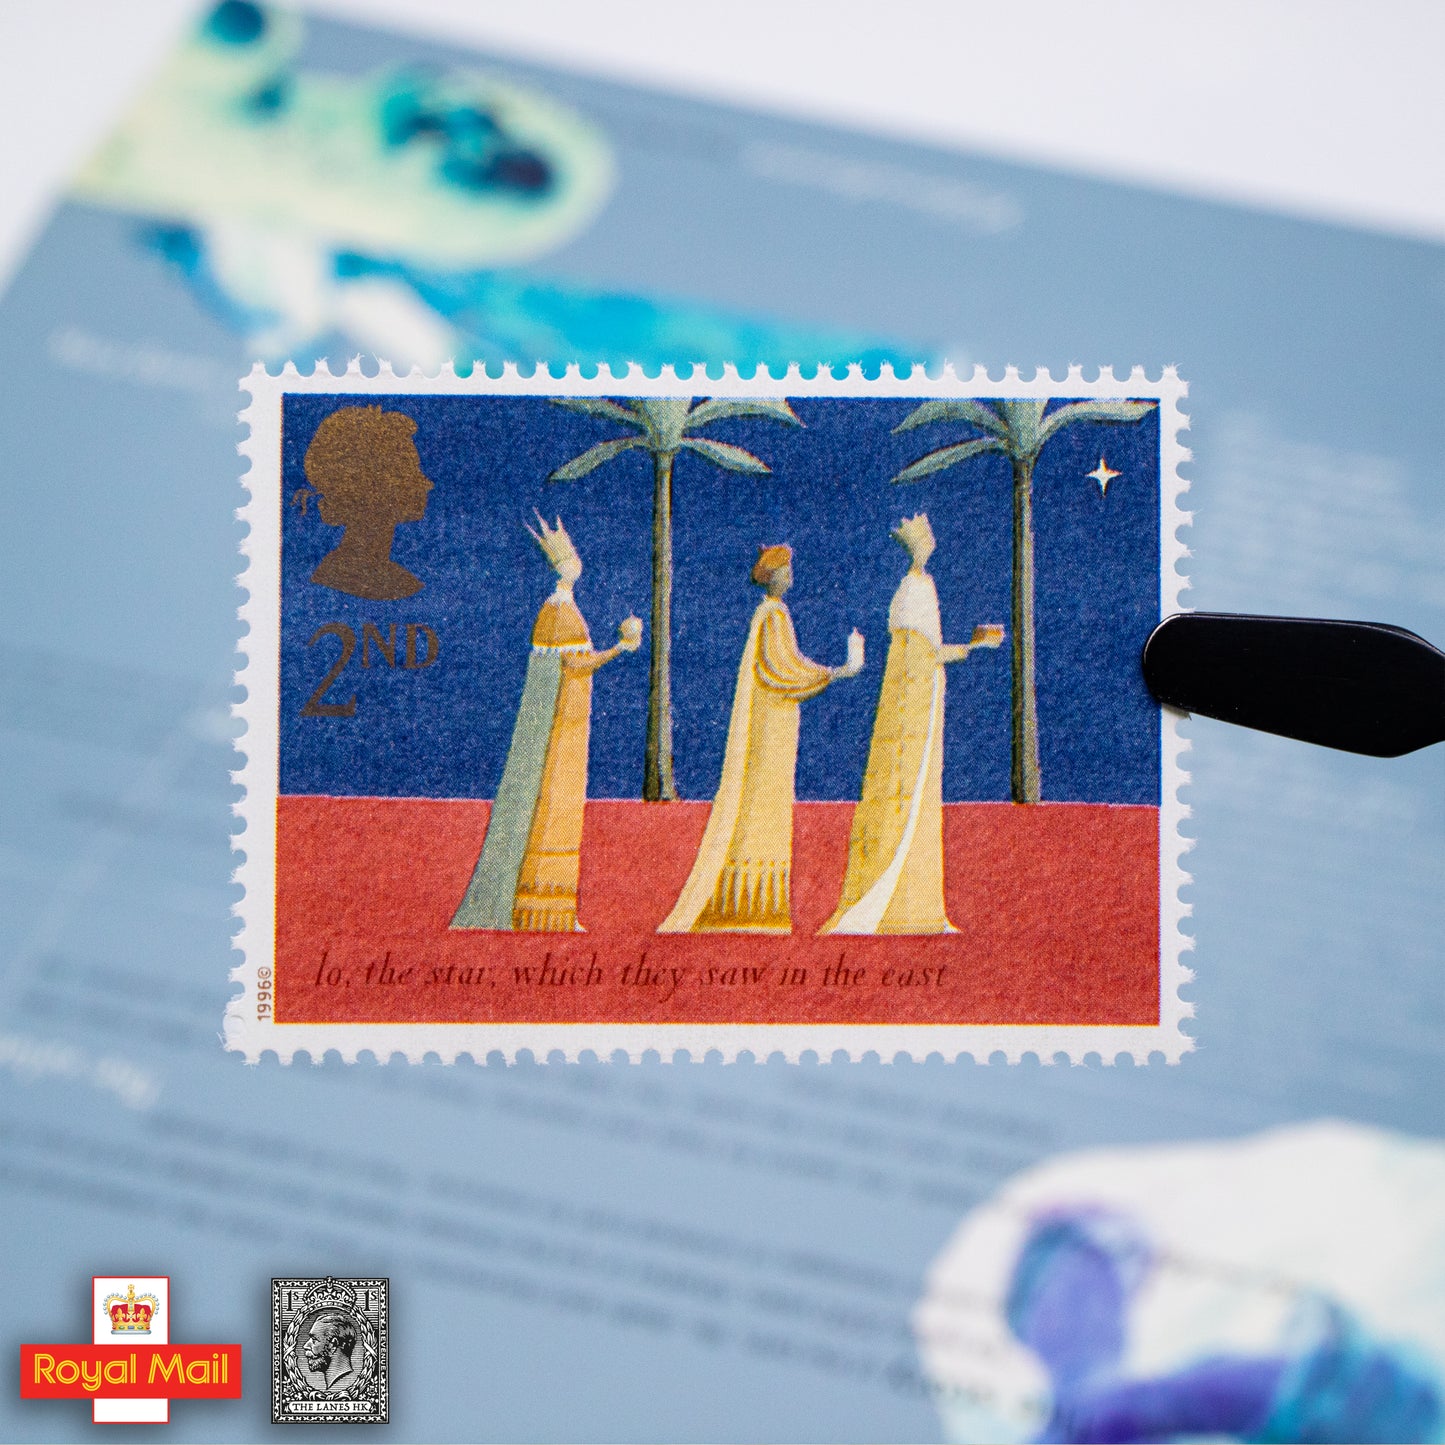 #272: 1996年 聖誕節 紀念郵票展示包